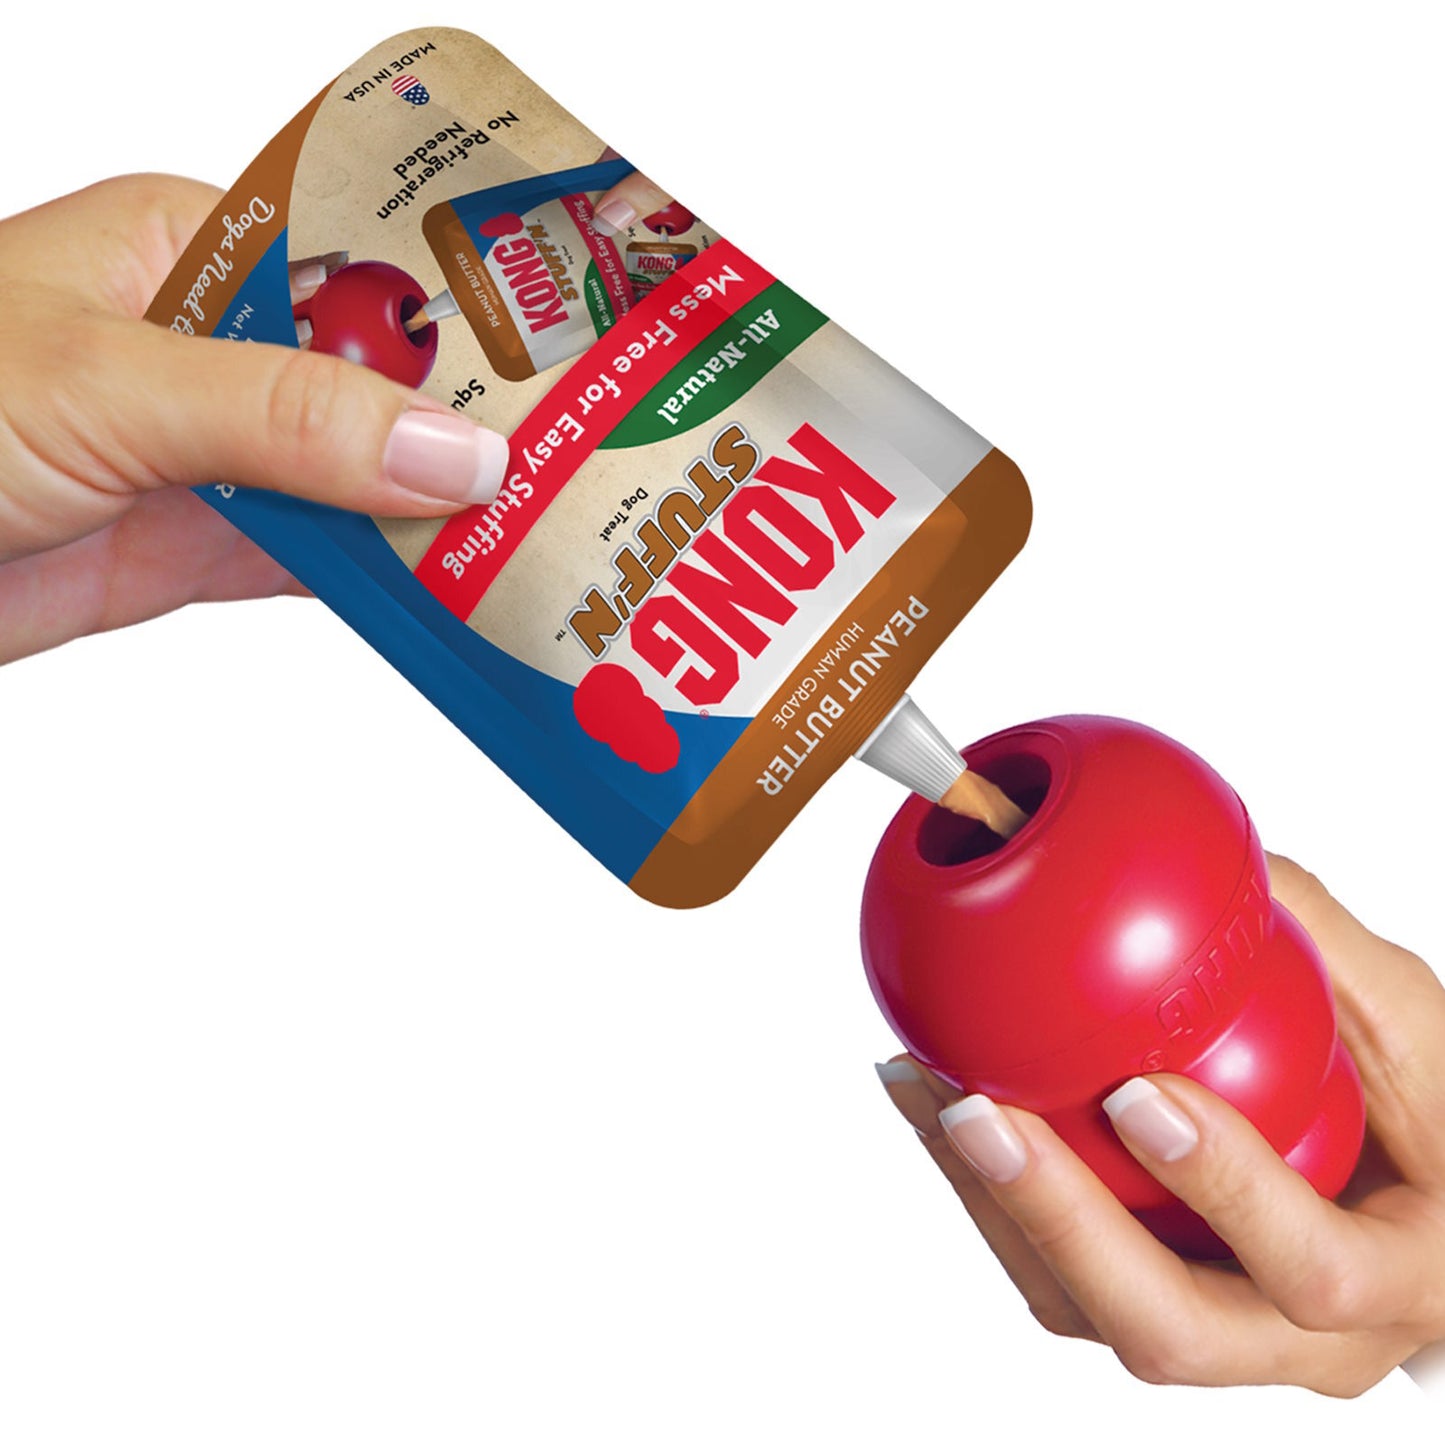 KONG Stuff'n Pouch - Peanut Butter